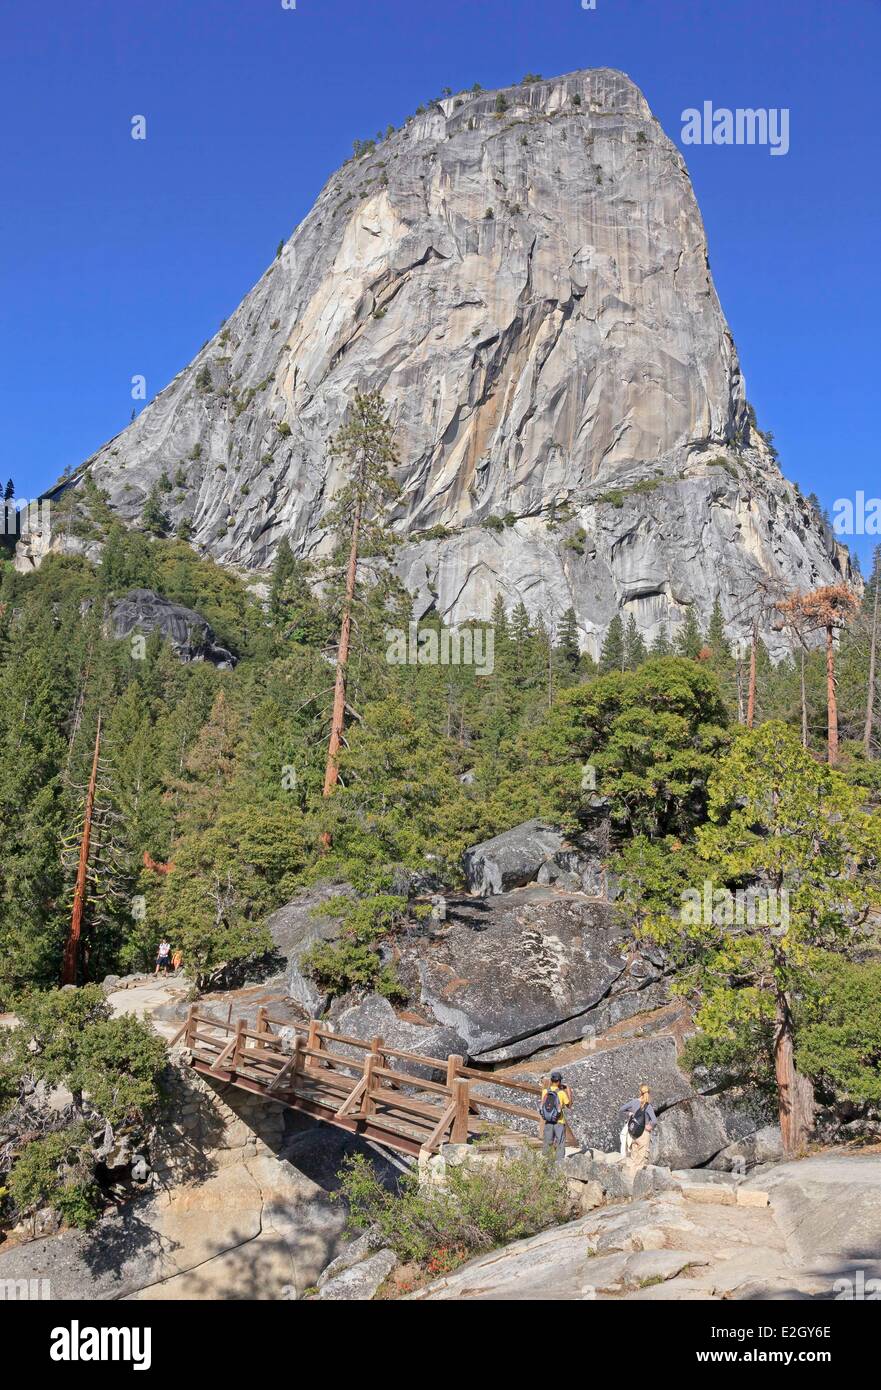 Stati Uniti California Sierra Nevada Parco Nazionale Yosemite elencati come patrimonio mondiale dall' UNESCO Yosemite Valley gli escursionisti a piedi ponte che attraversa il fiume Merced sul sentiero di Nevada Fall Liberty Cap cupola di granito in background Foto Stock